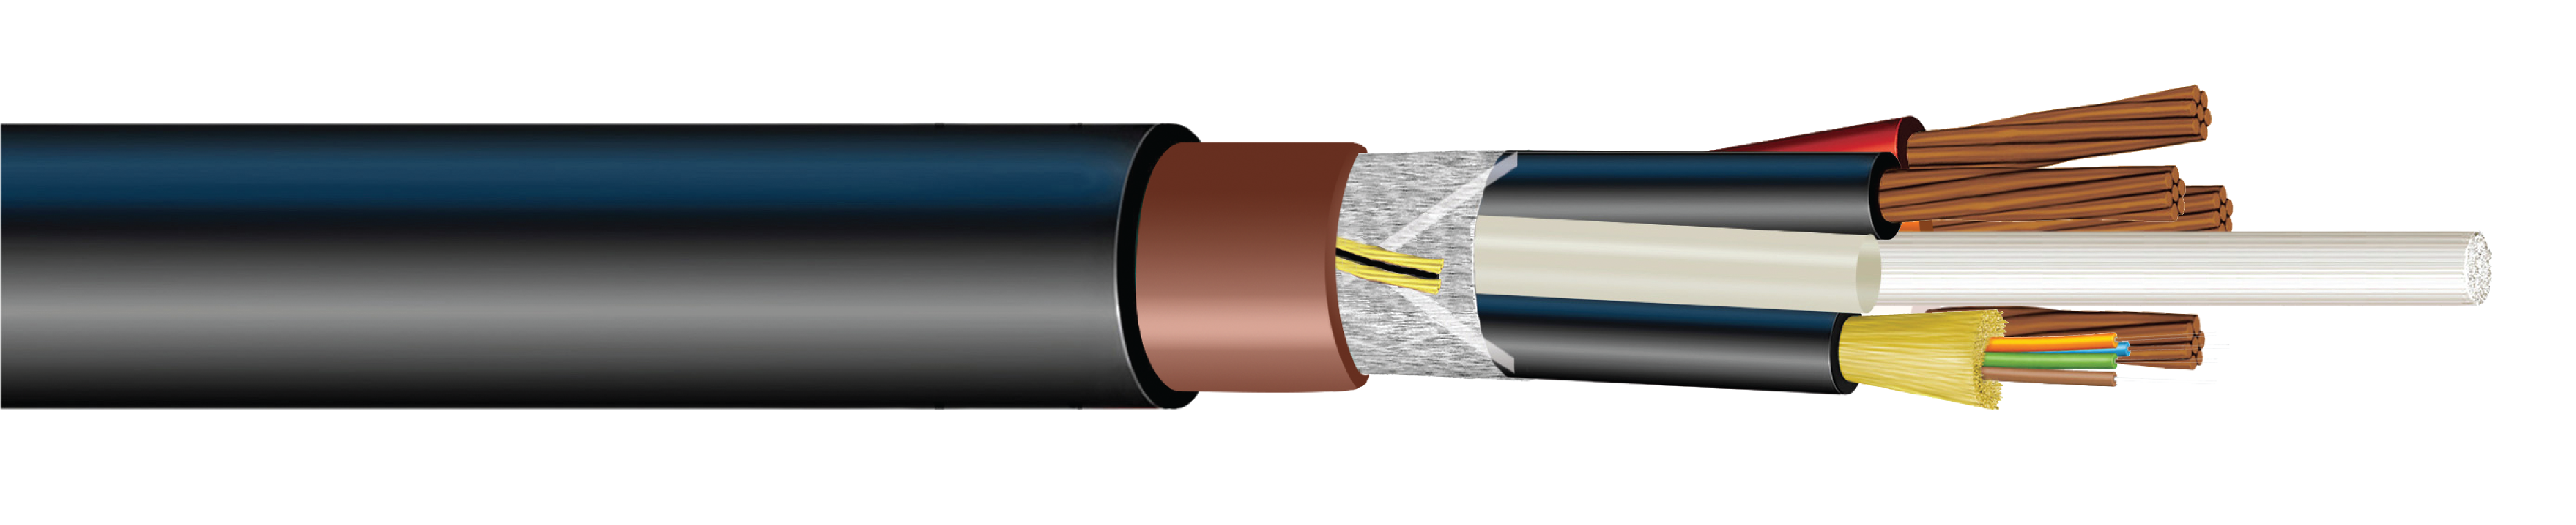 Hybrid Fiber-Copper Cable Fiber and Copper FTTA Wireless Cable